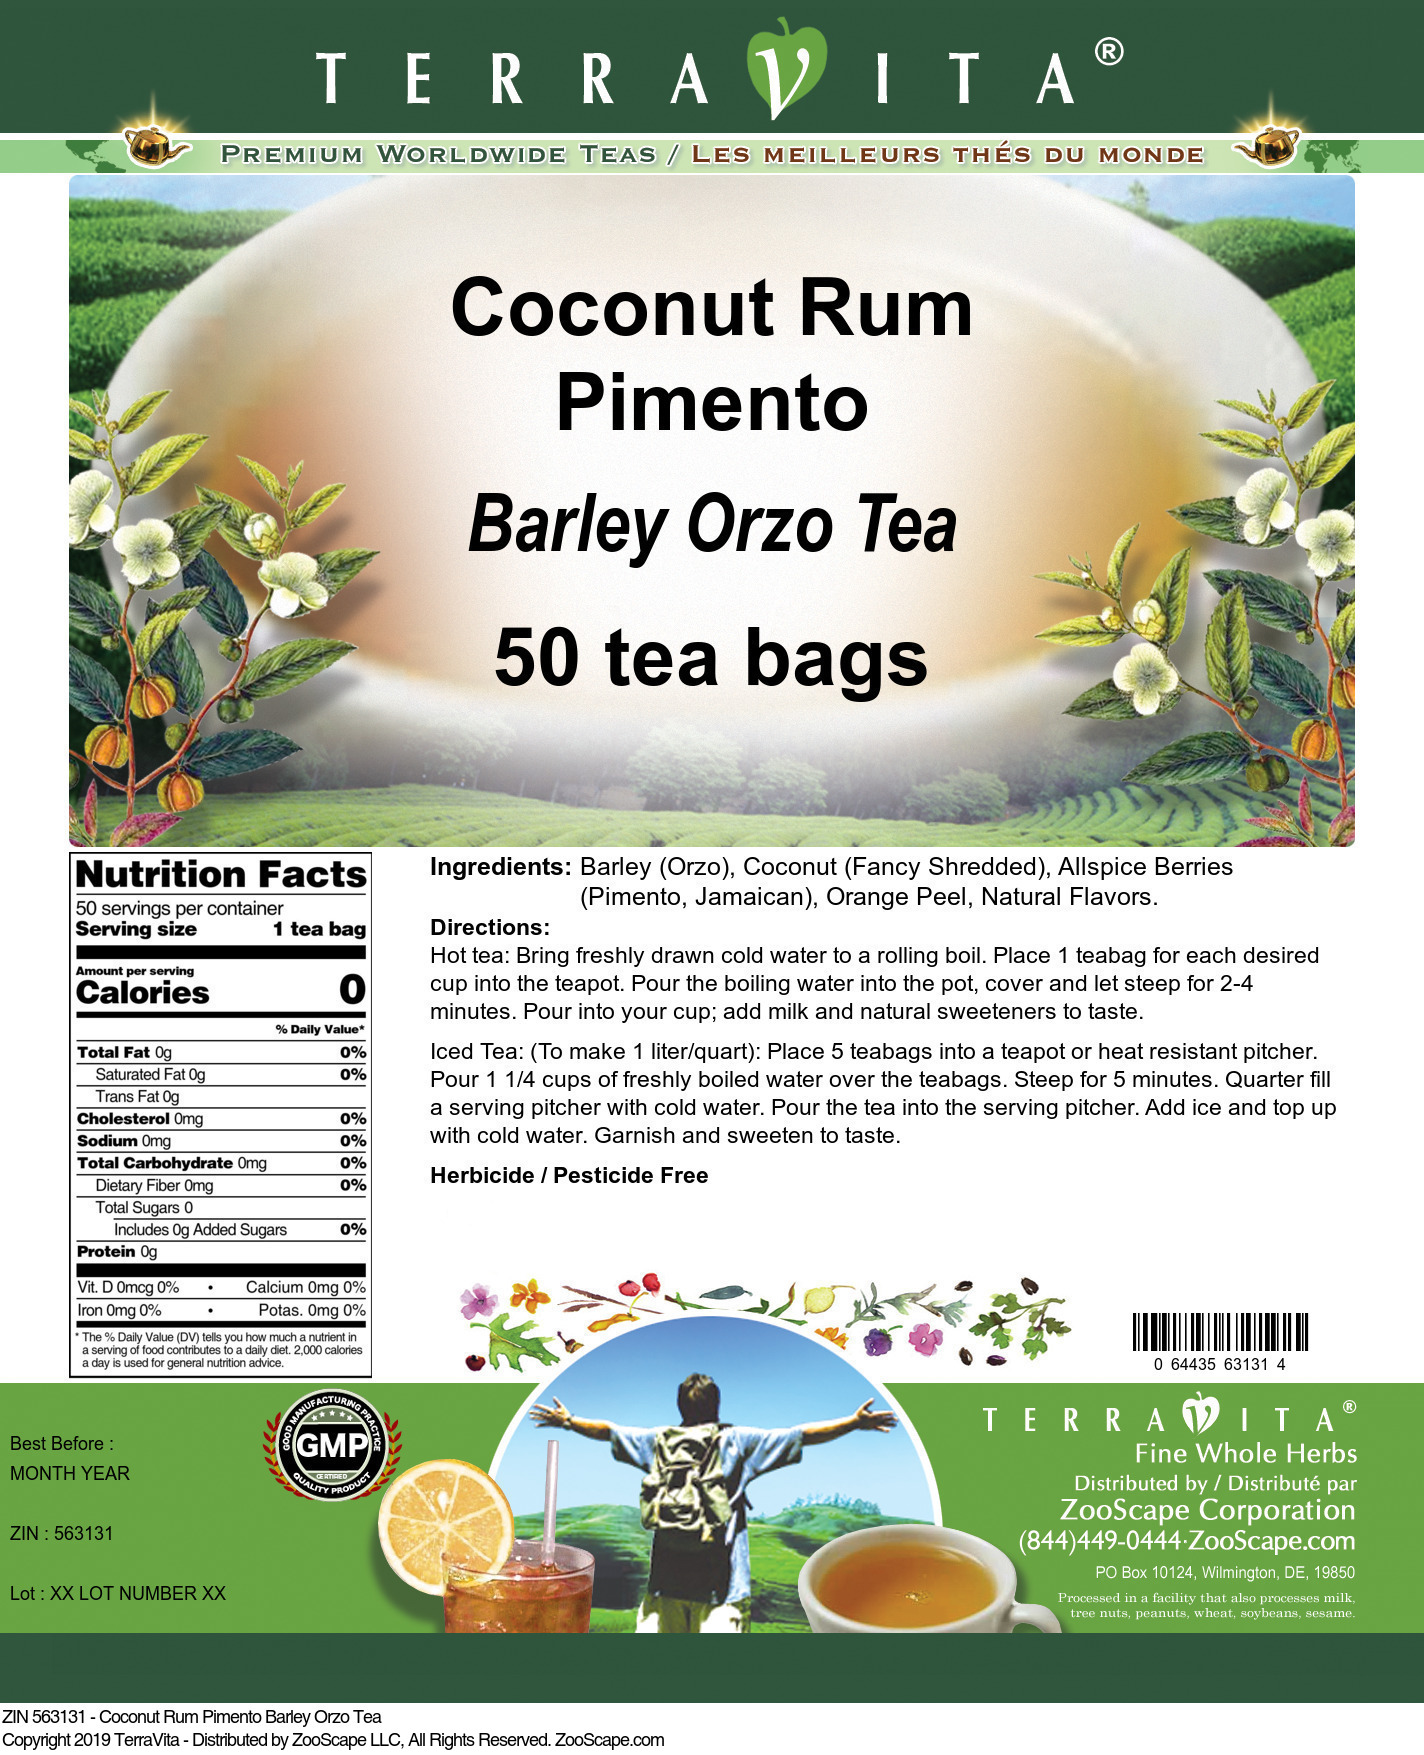 Coconut Rum Pimento Barley Orzo Tea - Label